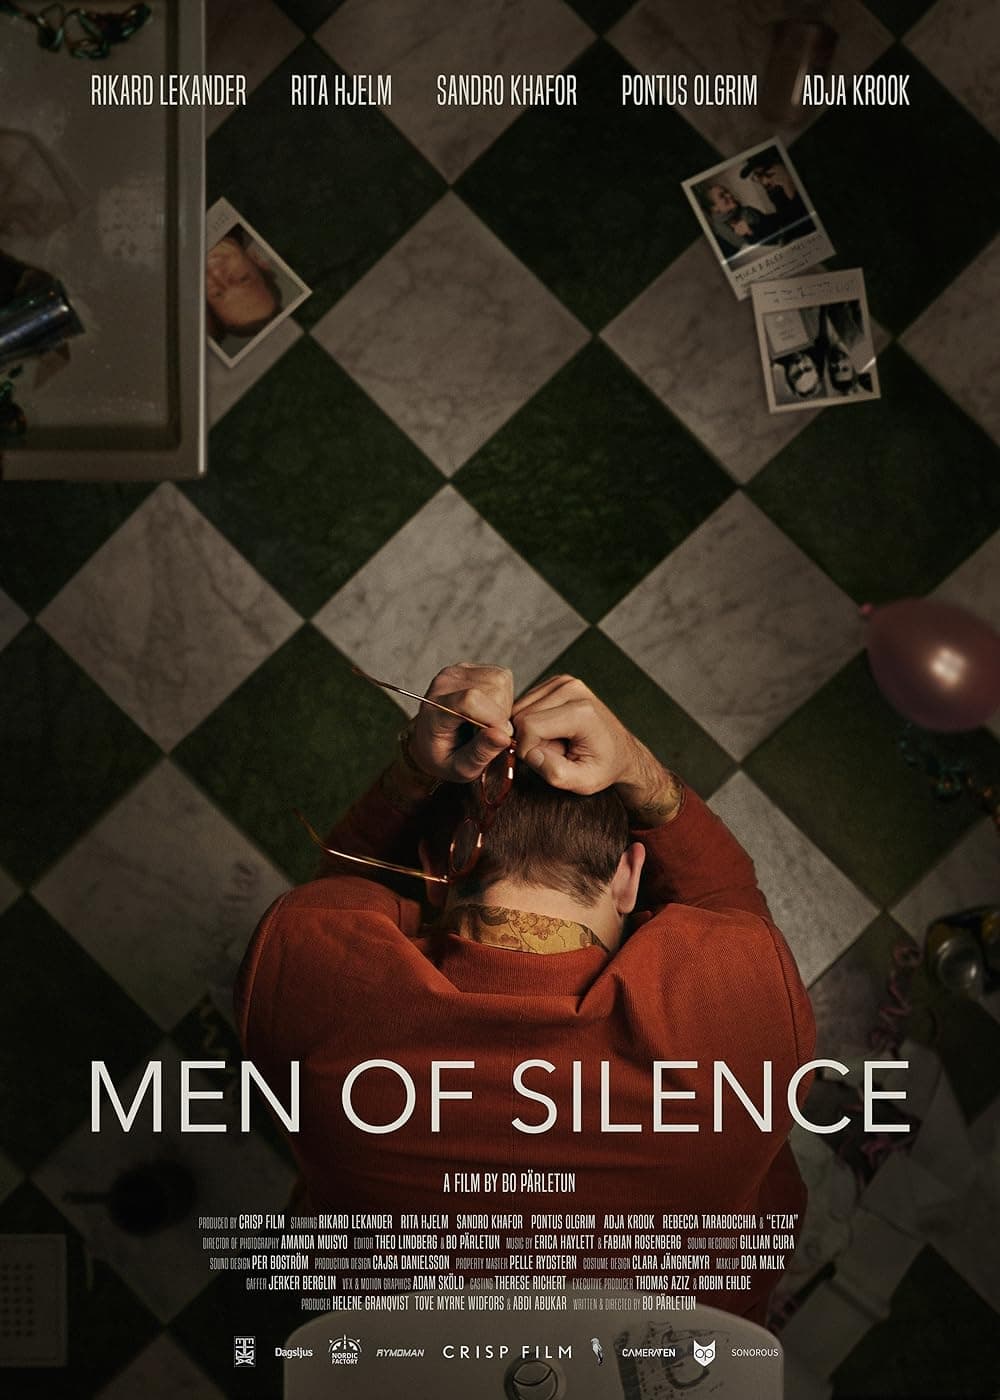 Men of Silence